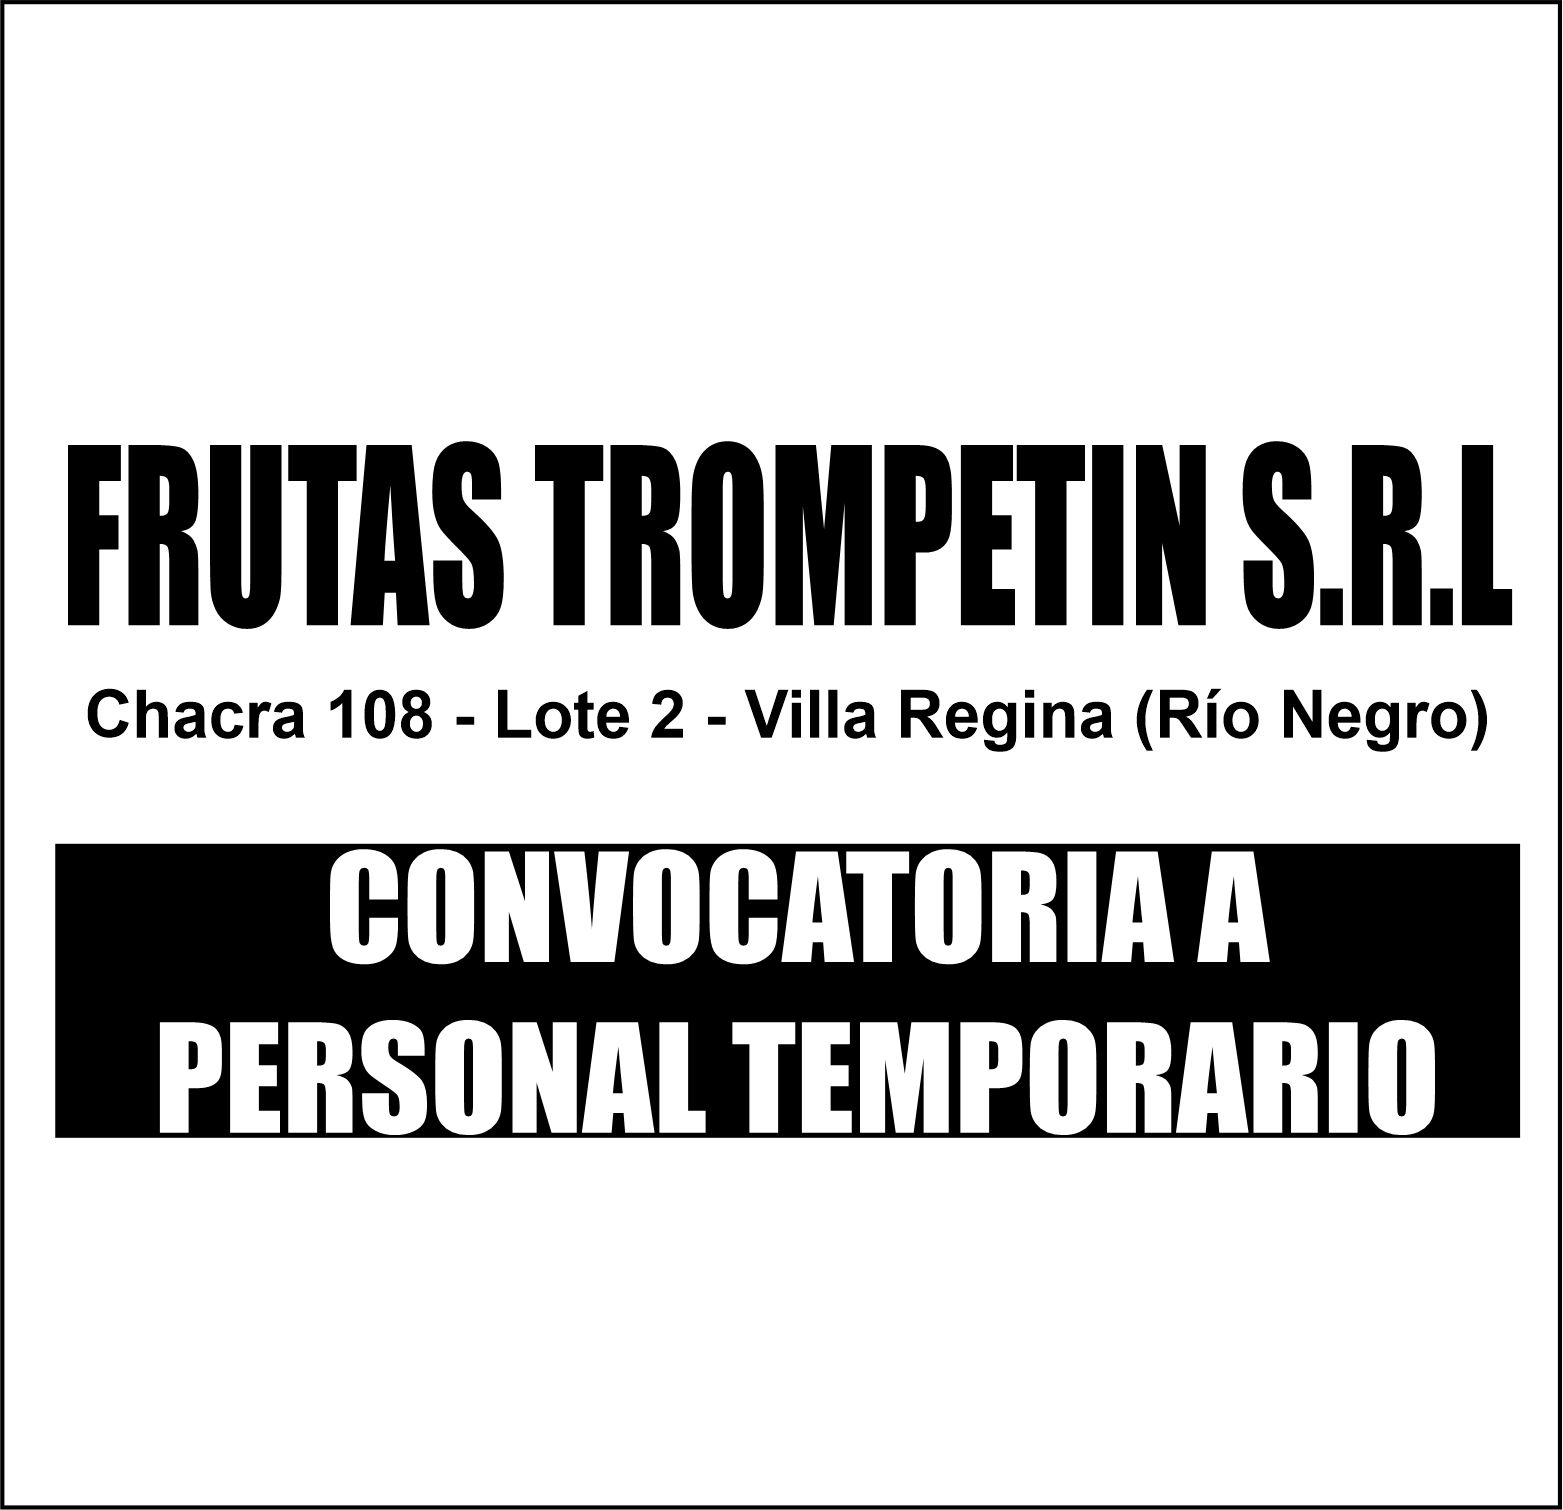 CONVOCATORIA A PERSONAL TEMPORARIO: FRUTAS TROMPETIN S.R.L